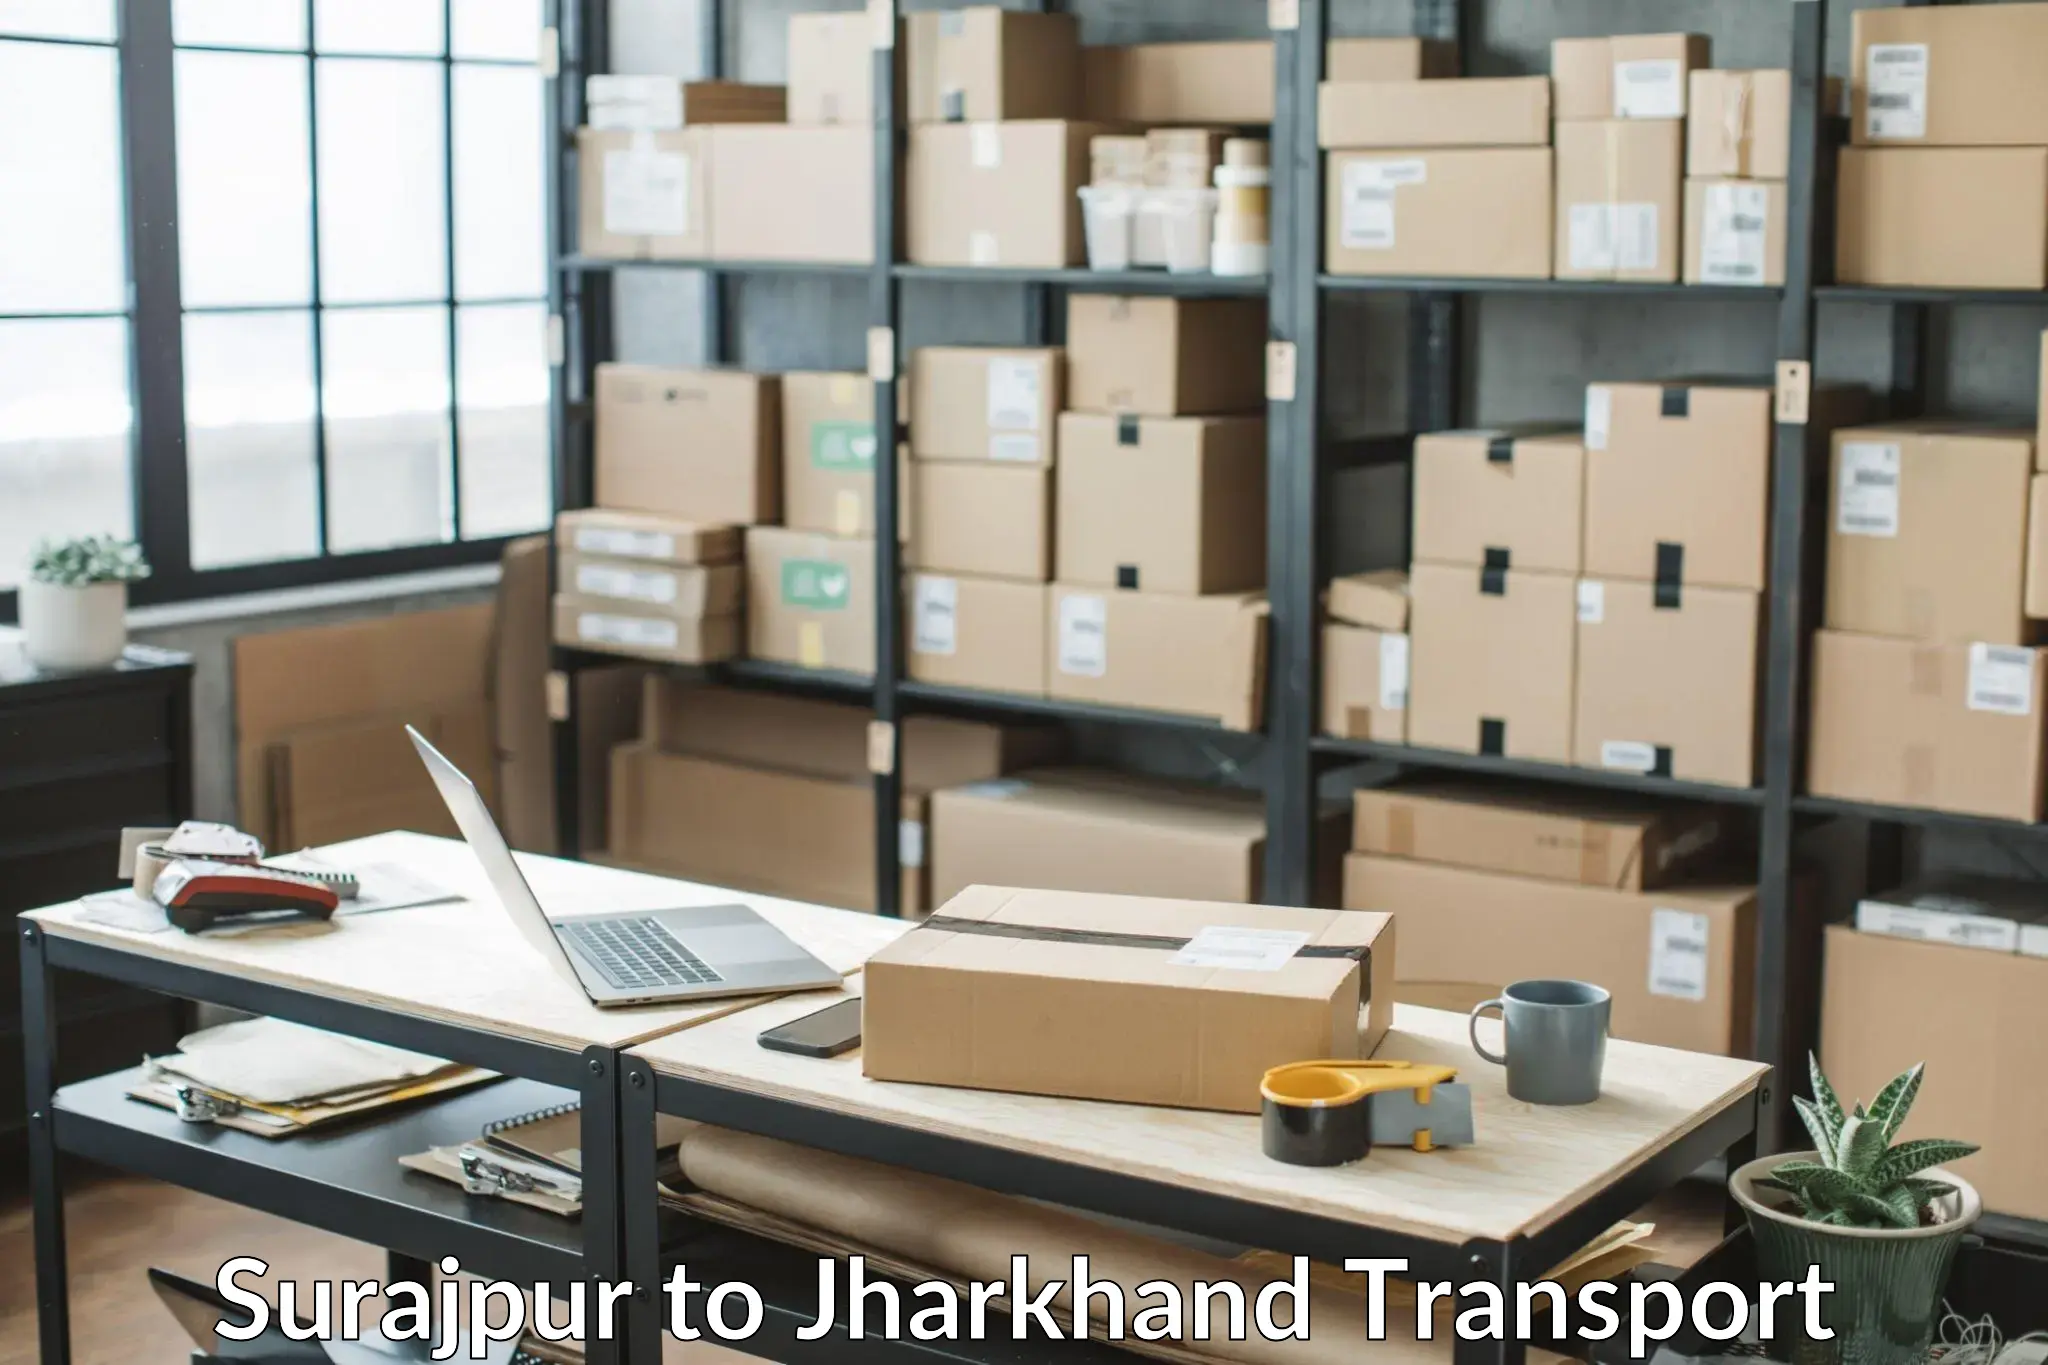 Truck transport companies in India Surajpur to Medininagar